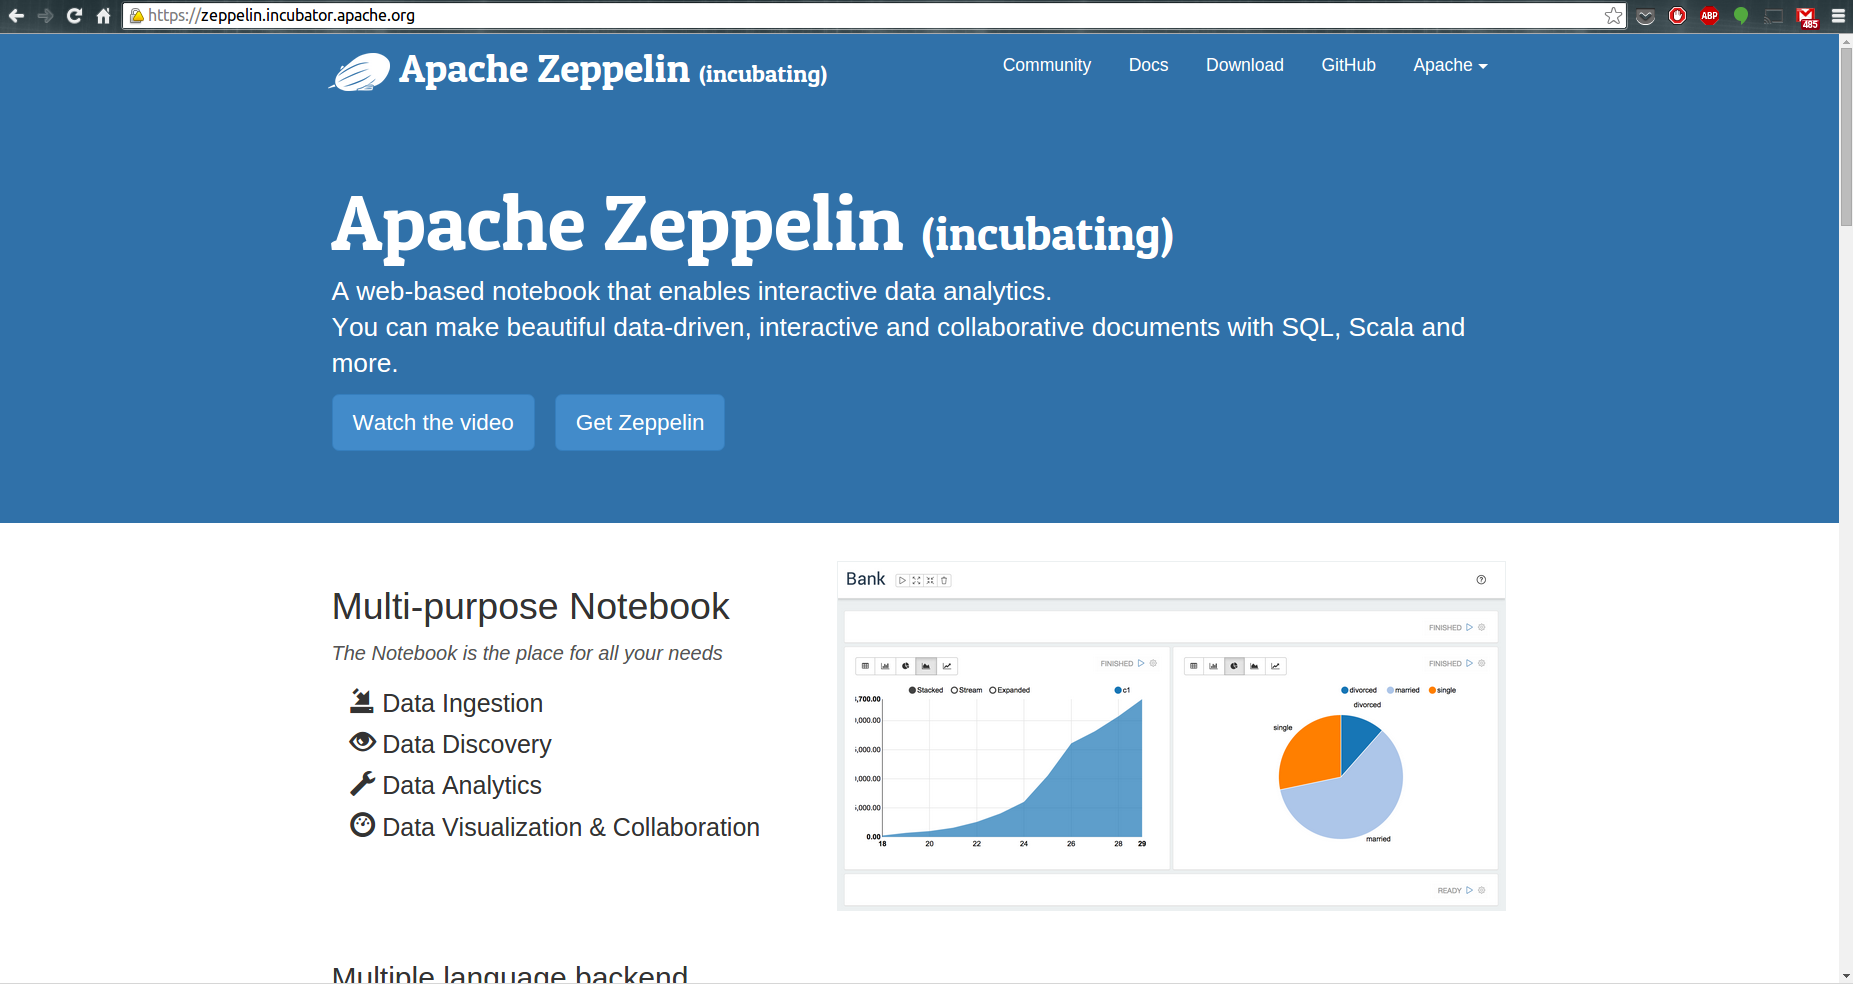 【译】大数据分析平台搭建教程：基于Apache Zeppelin Notebook和R的交互式数据科学